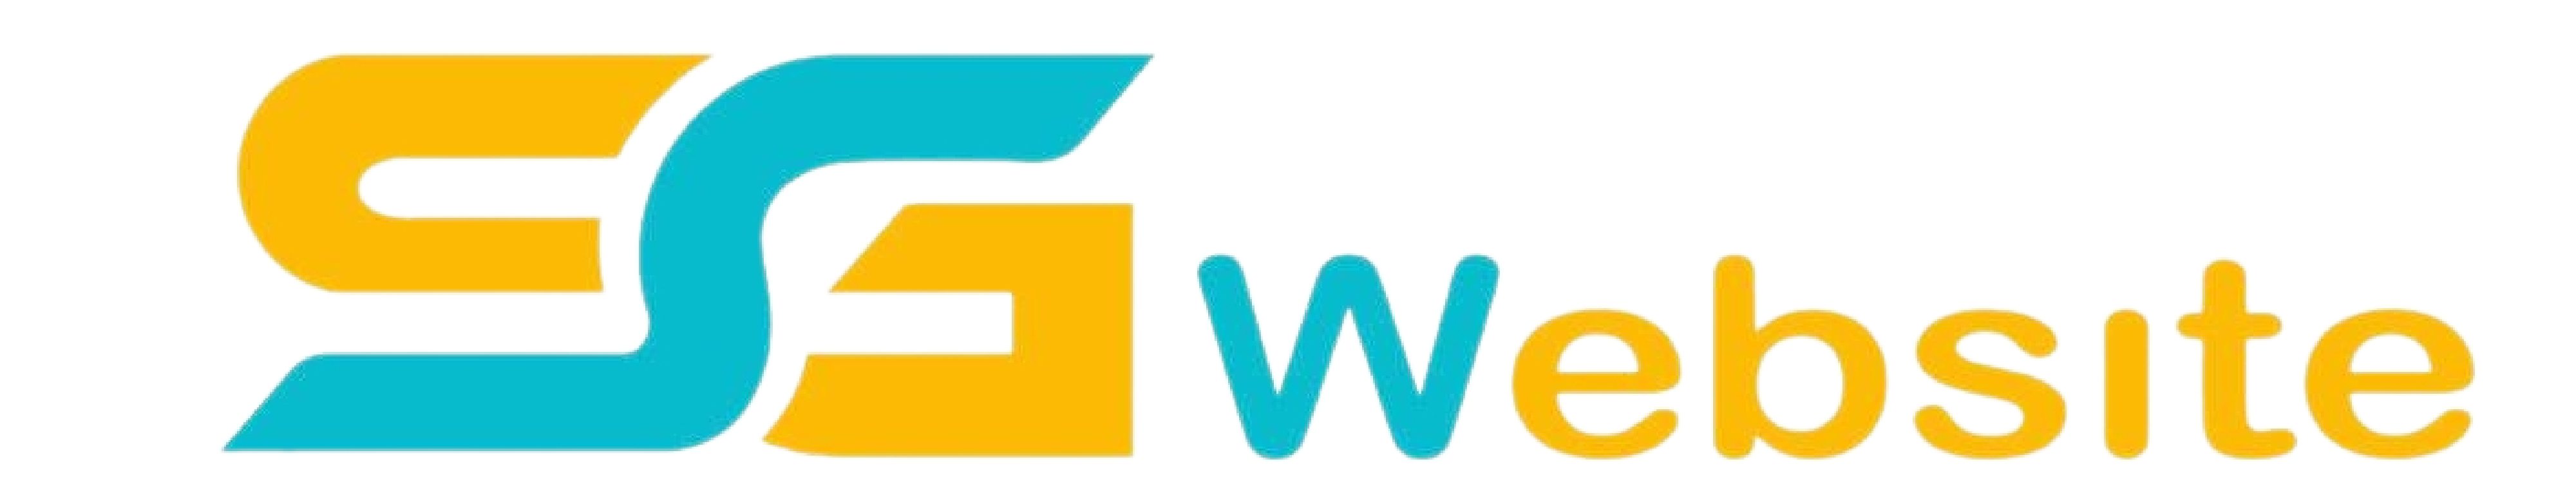 logo sg